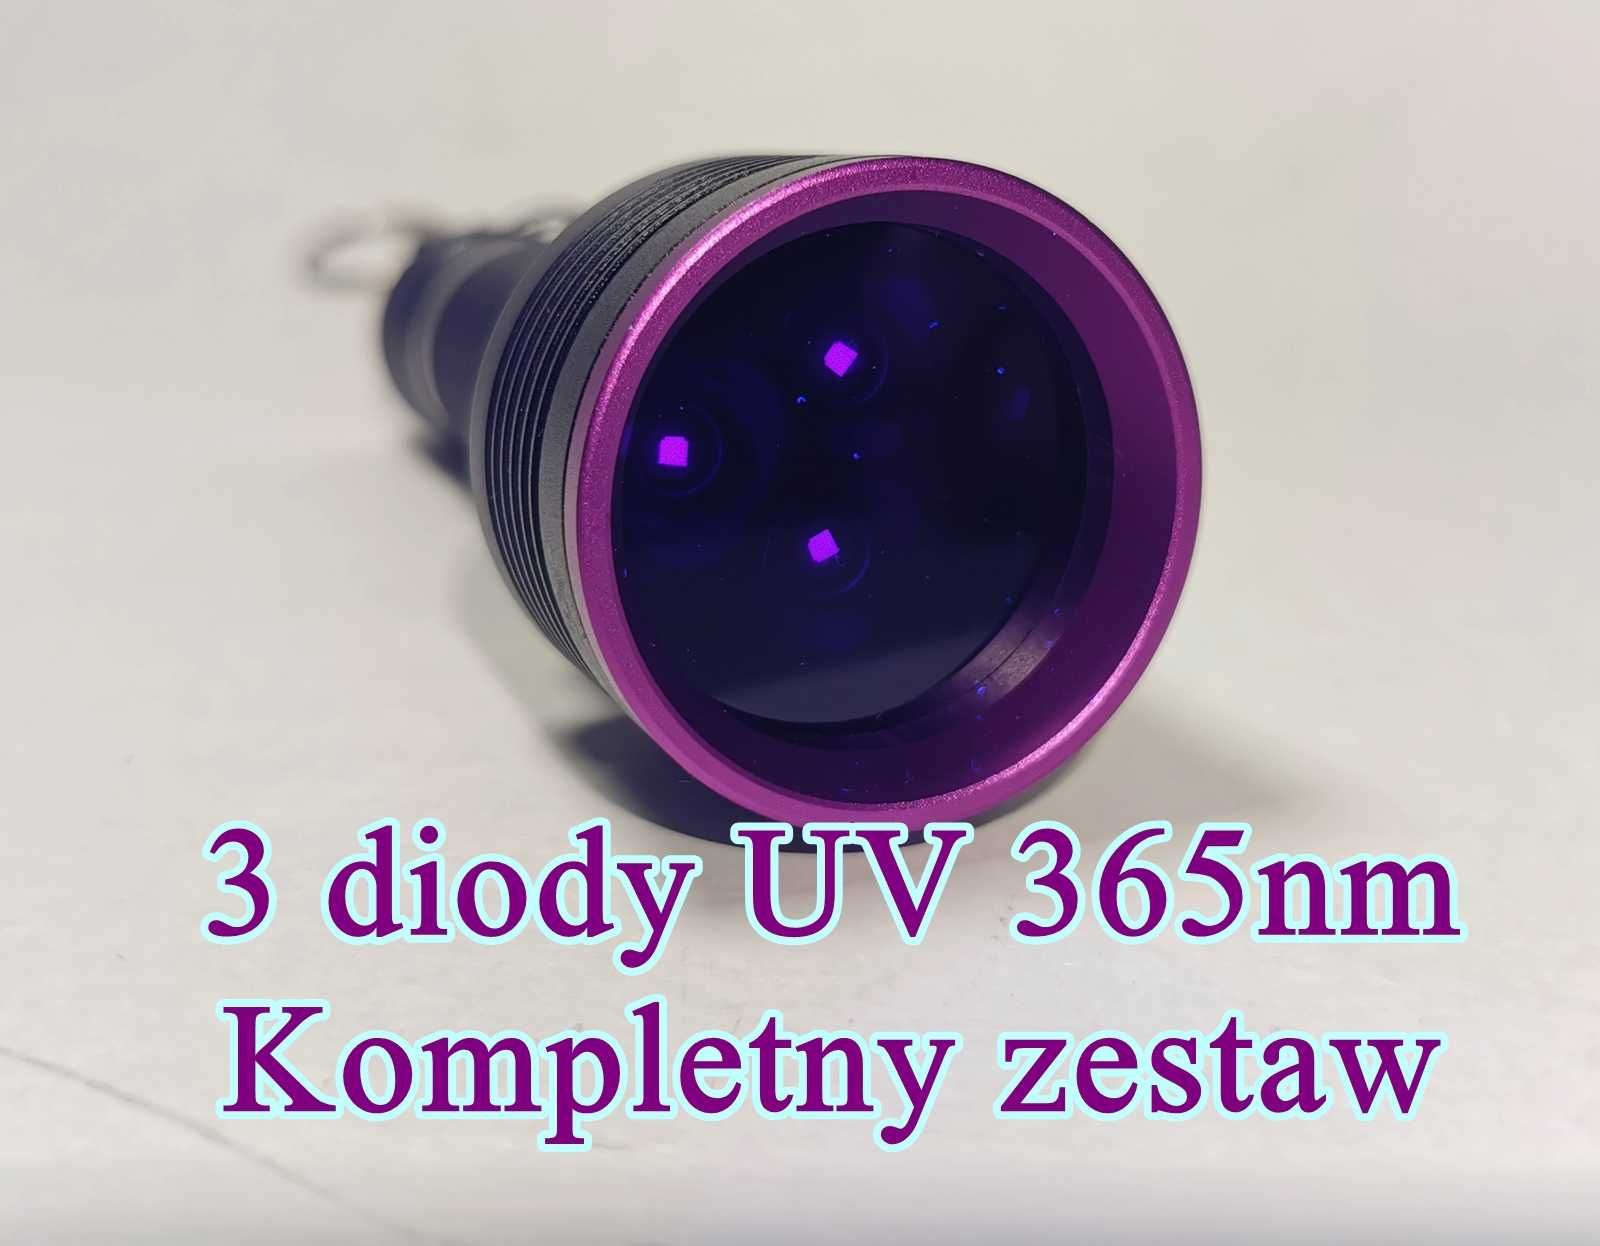 Latarka UV, dł. fali 365nm, głęboki ultrafiolet. Odkrywa niewidzialne.